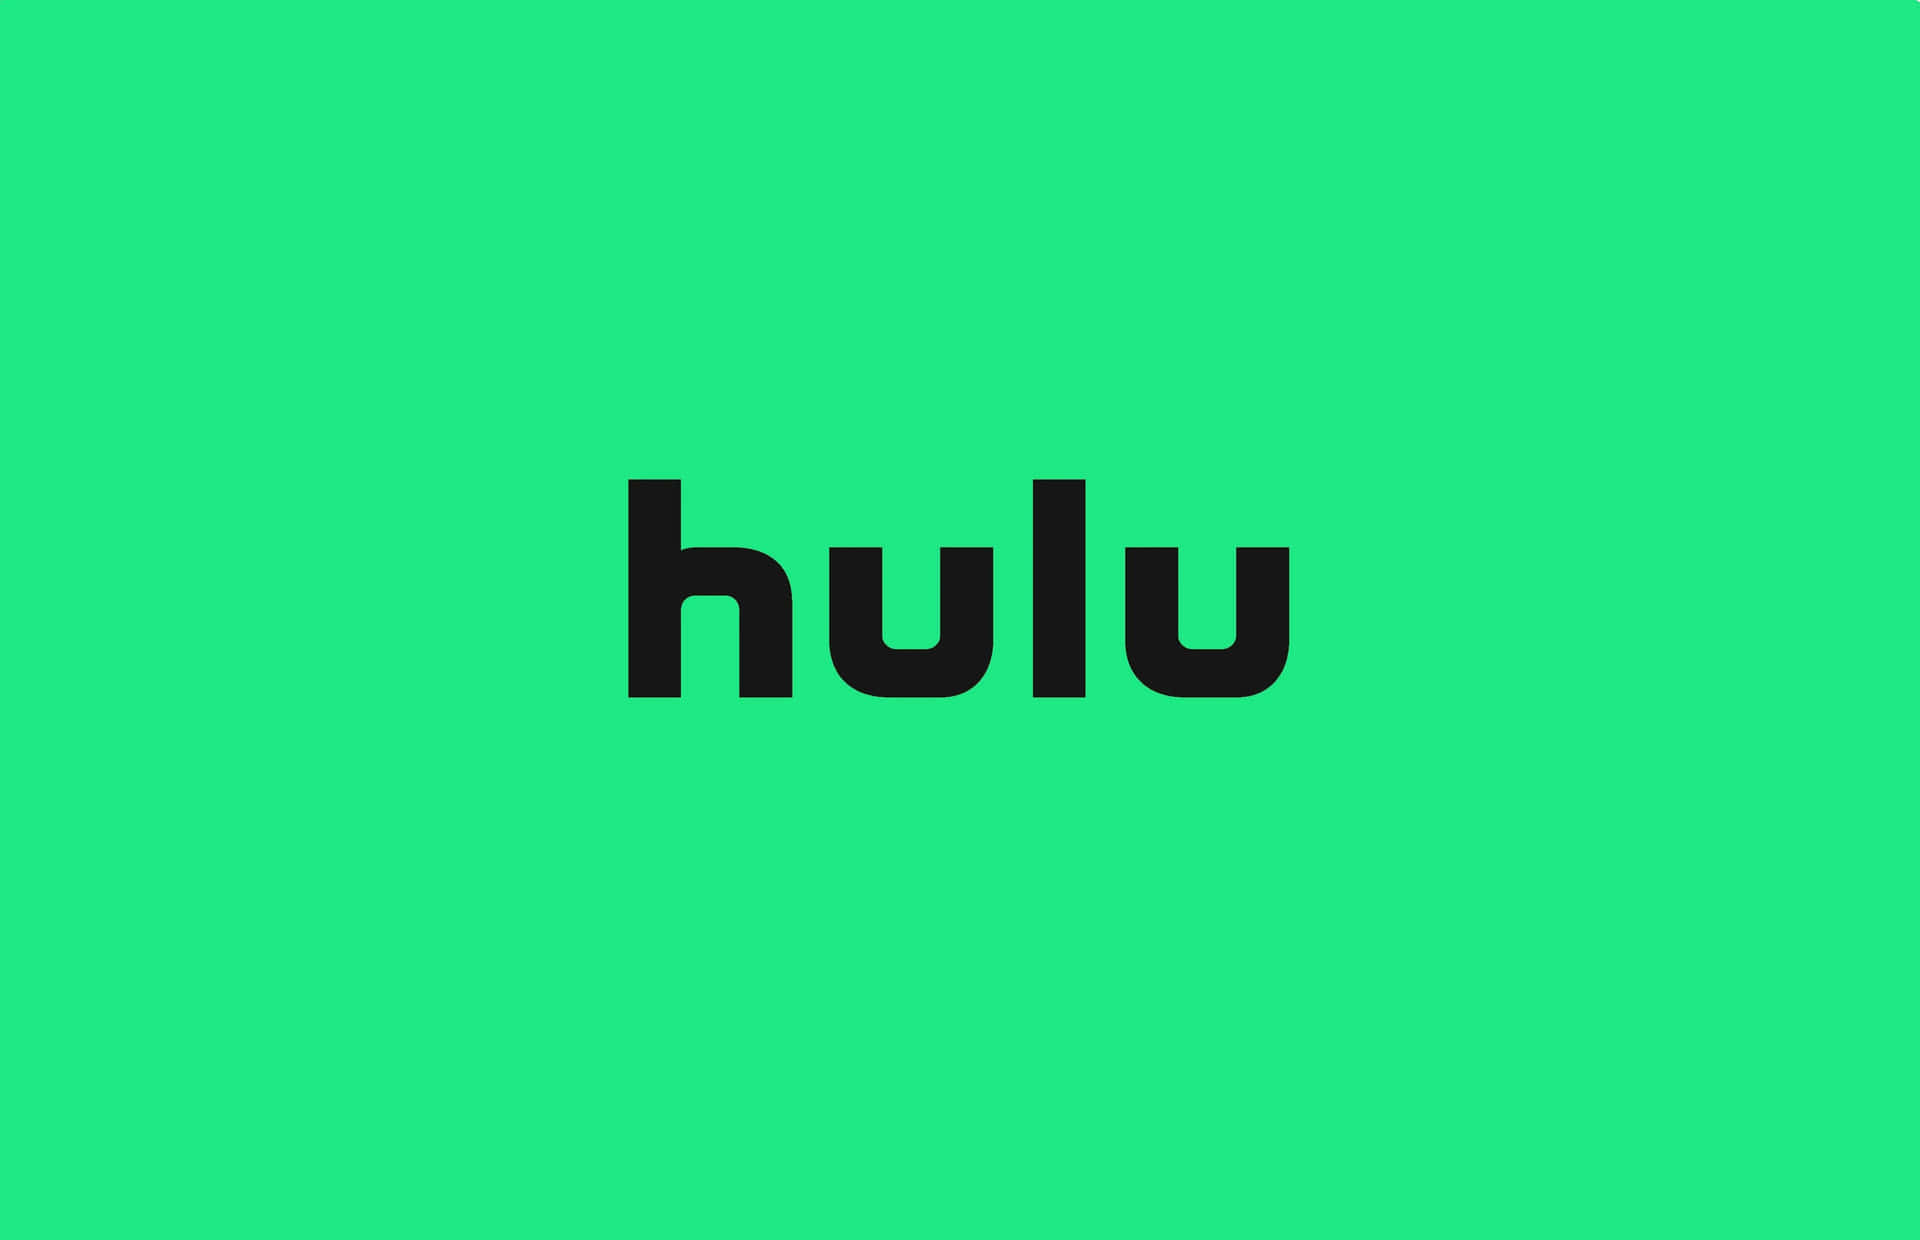 Unailustración De Un Fondo De Hulu, Perfecto Para Transmitir Tus Películas Y Programas Favoritos.